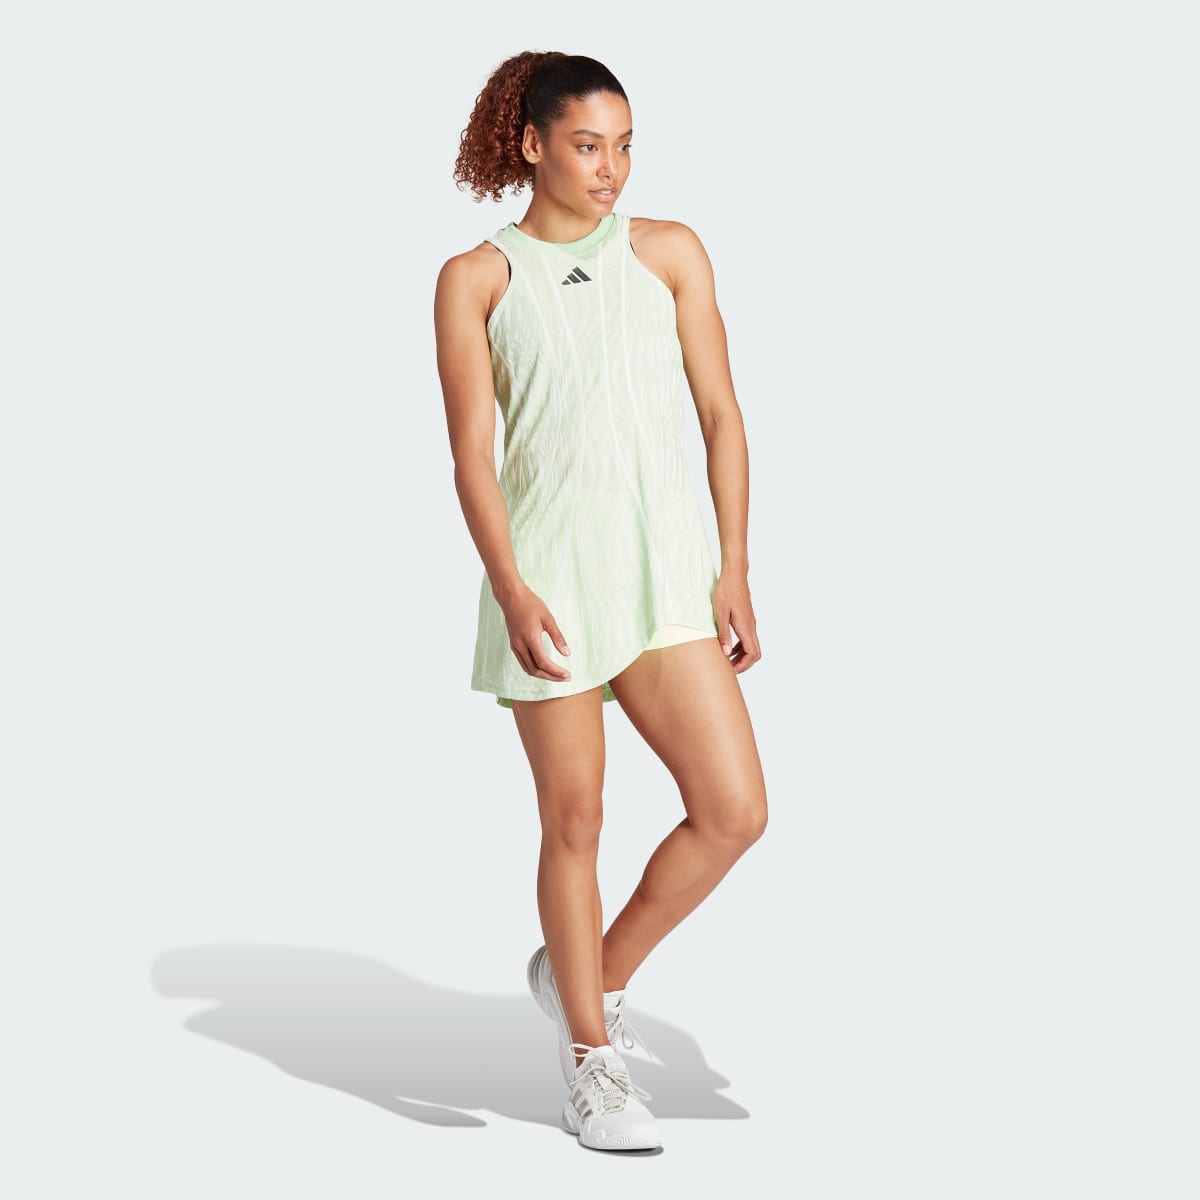 Adidas Tennis Airchill Pro Dress. 7